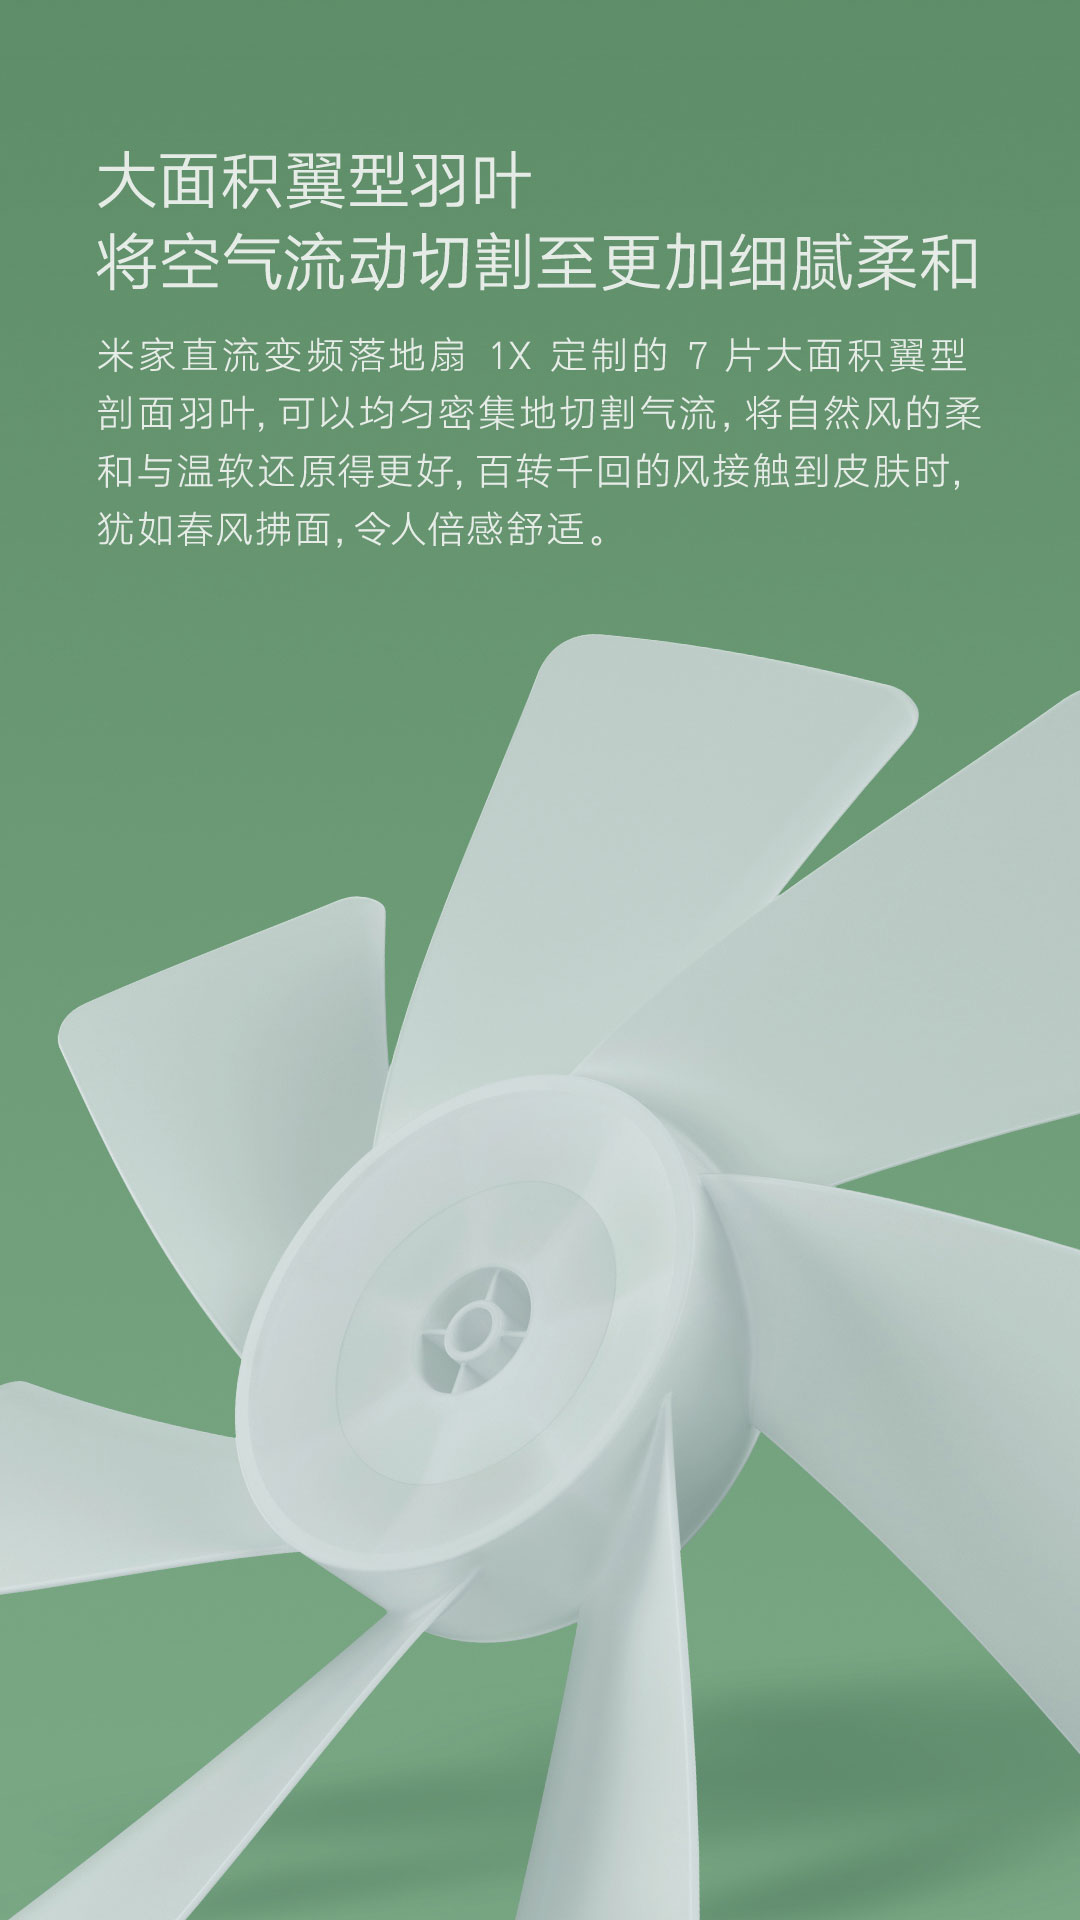 Xiaomi dc inverter fan